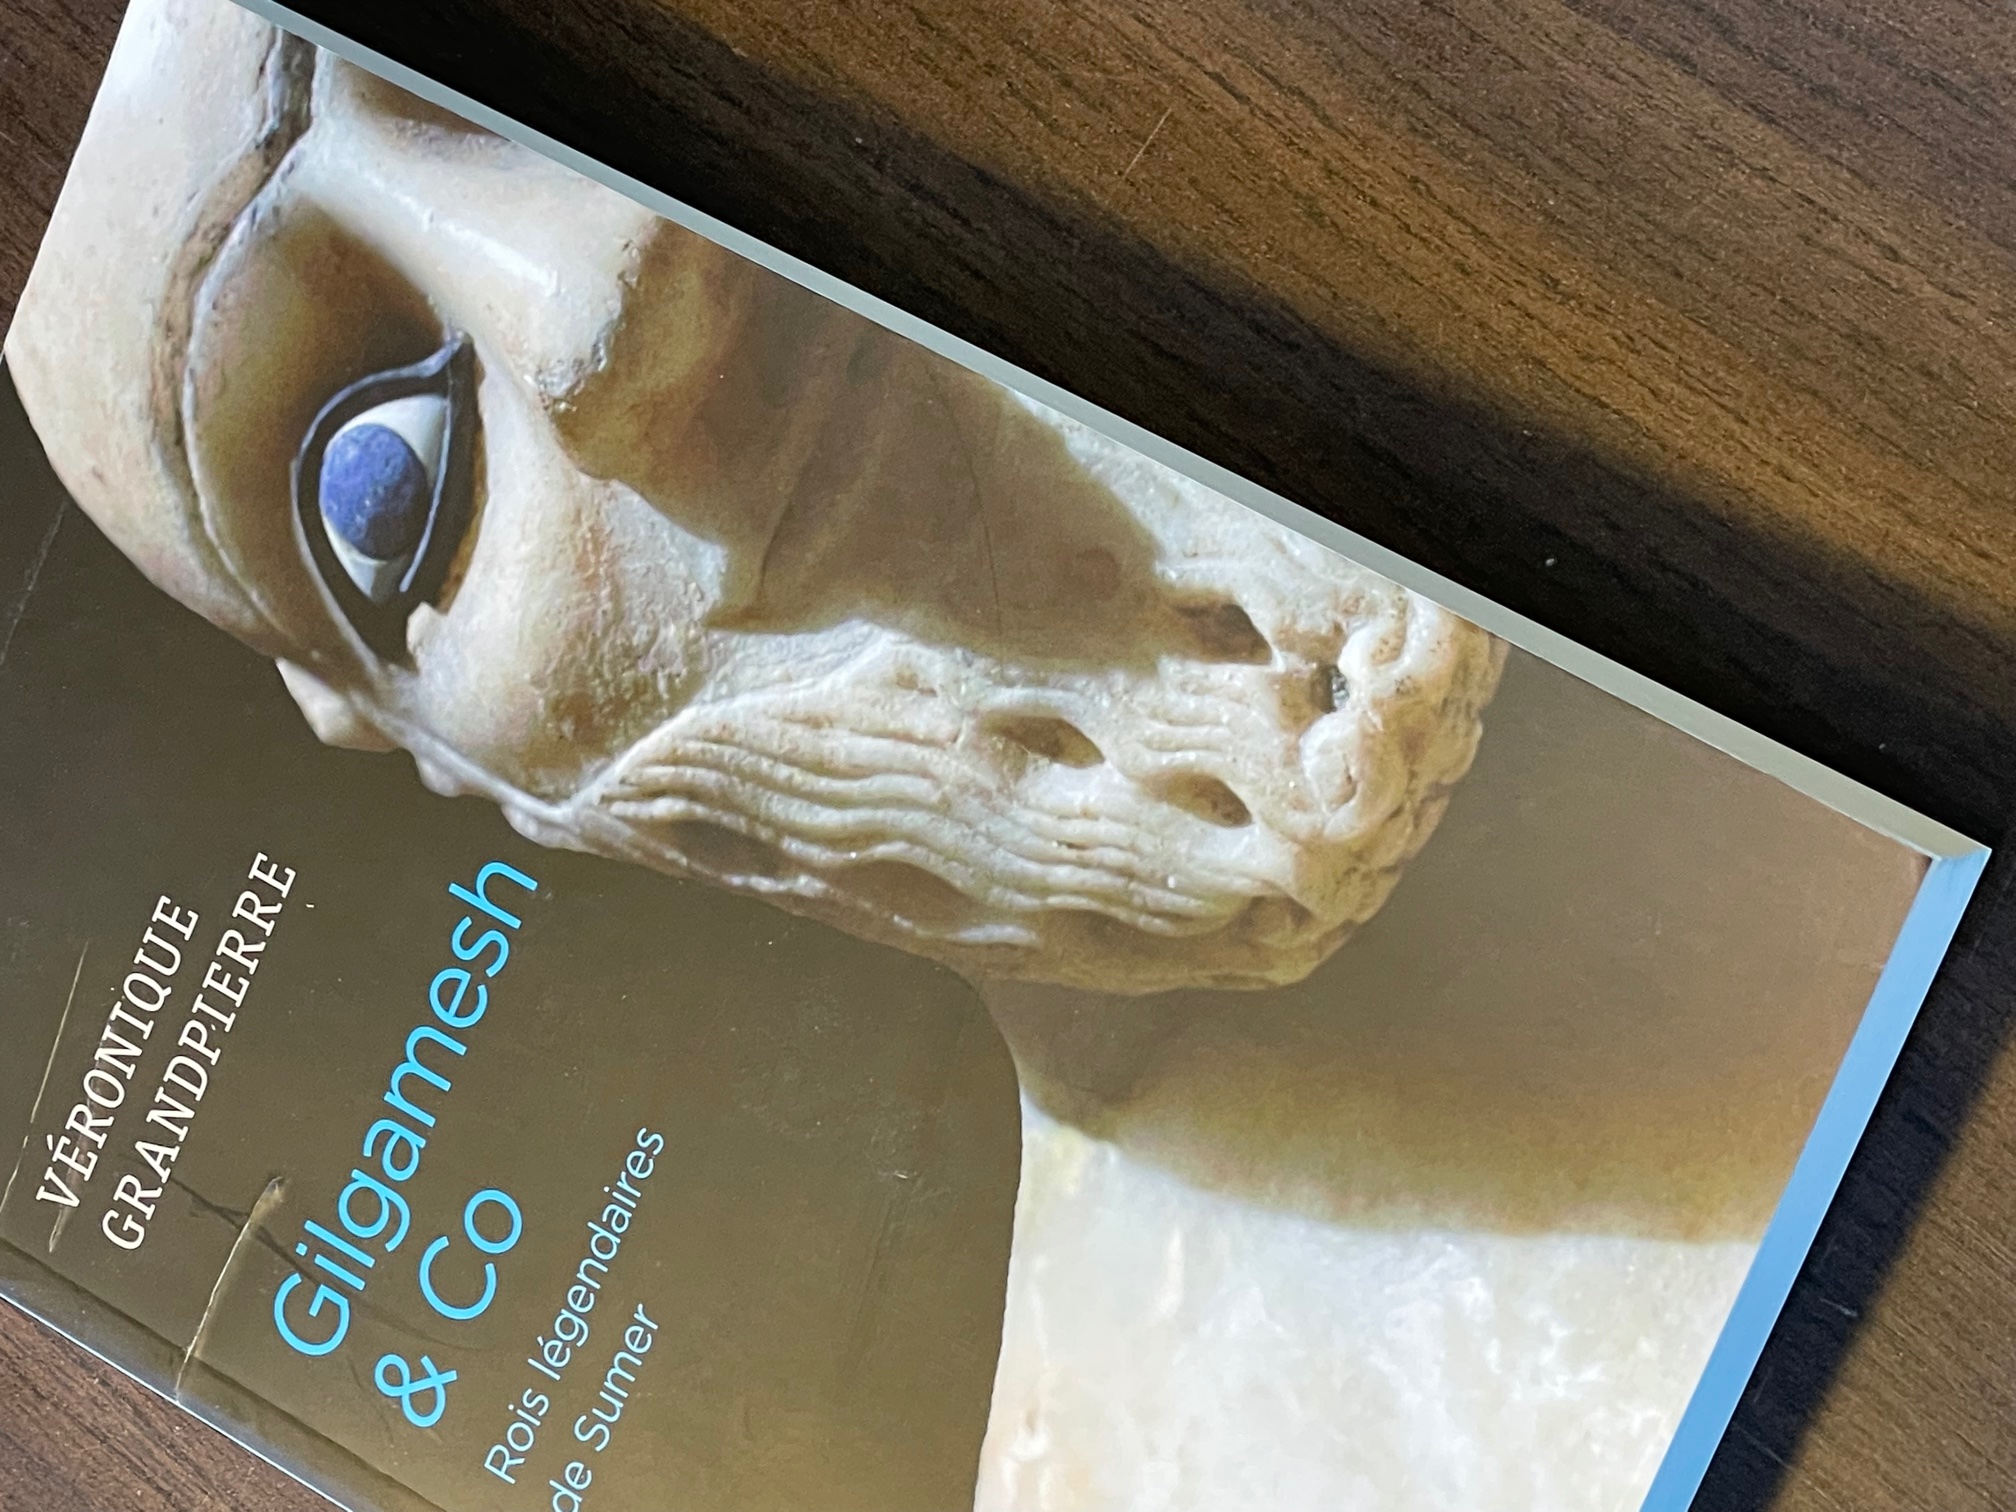 Exemplaire d'occasion - Gilgamesh & Co. Rois légendaires de Sumer, 2019, 260 p.